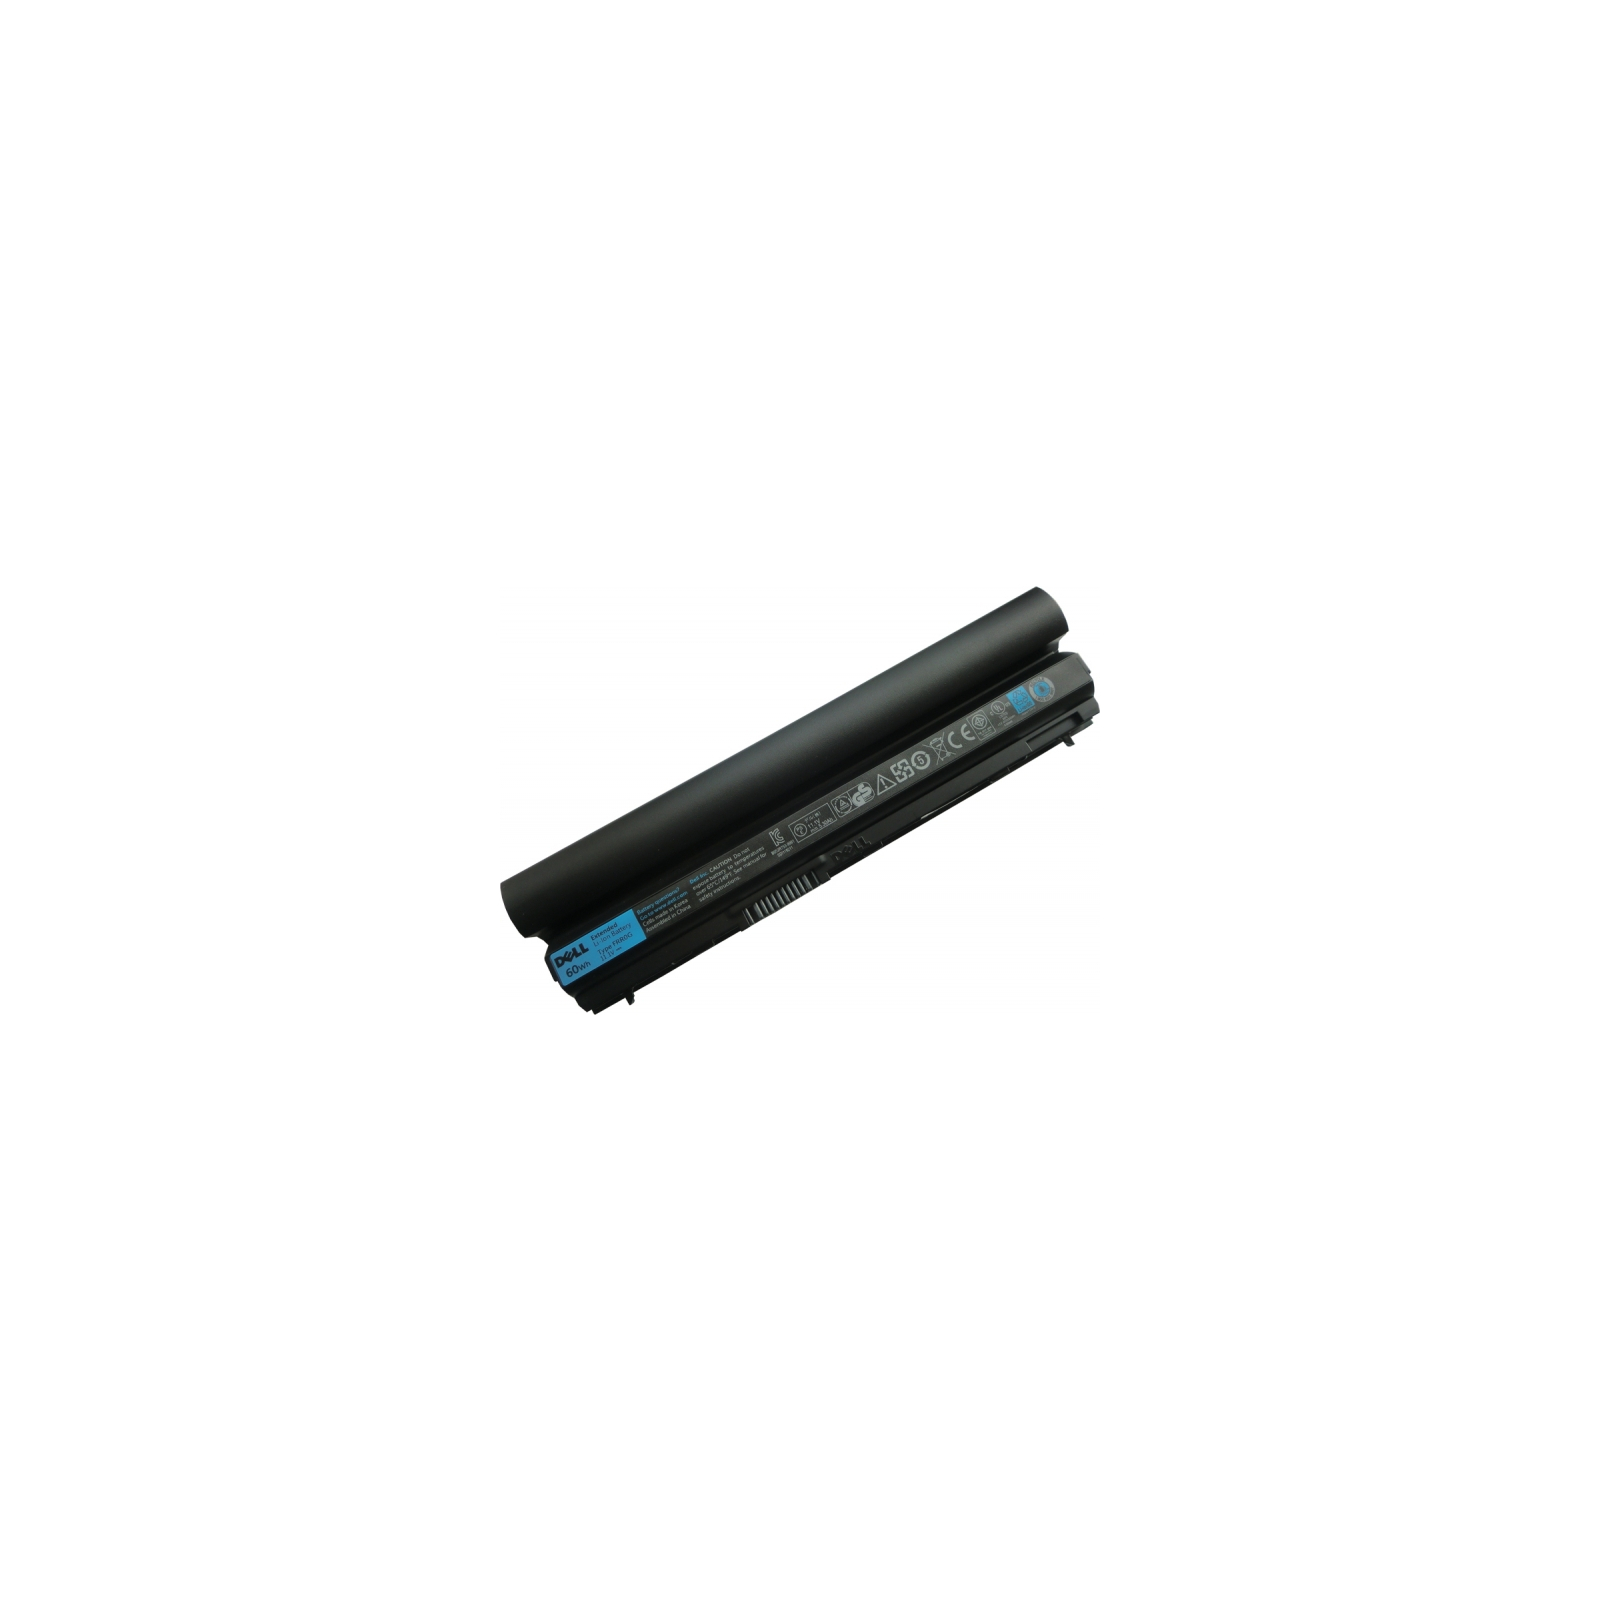 Аккумулятор для ноутбука Dell Dell Latitude E6230 RFJMW 5800mAh (65Wh) 6cell 11.1V Li-ion (A41862) изображение 2